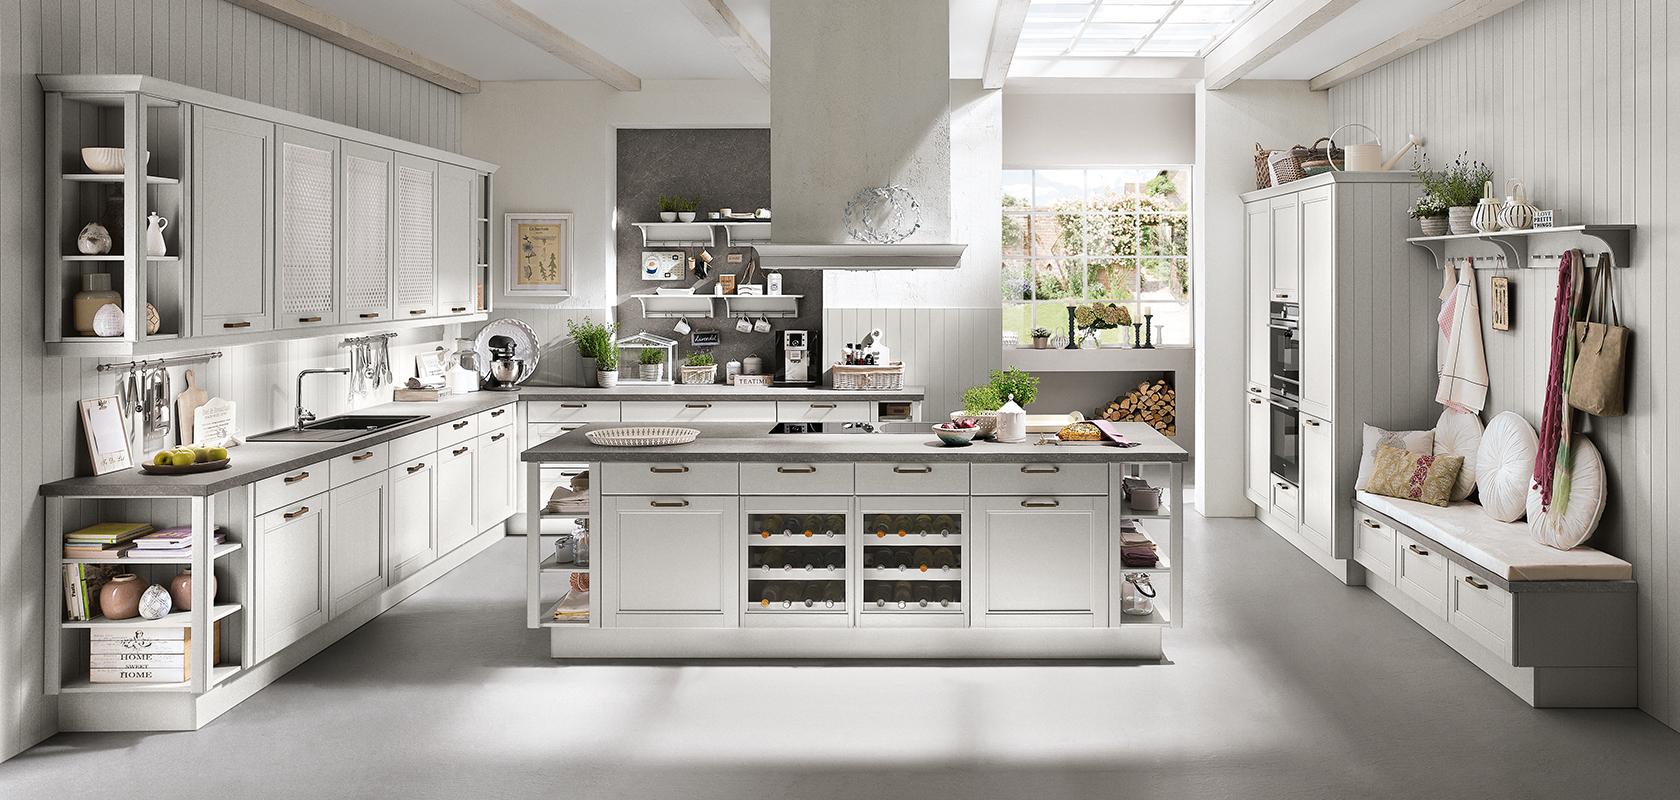 Světlá, moderní kuchyně s bílými skříňkami, centrálním ostrovem a nerezovými spotřebiči, která představuje elegantní a čistý design.